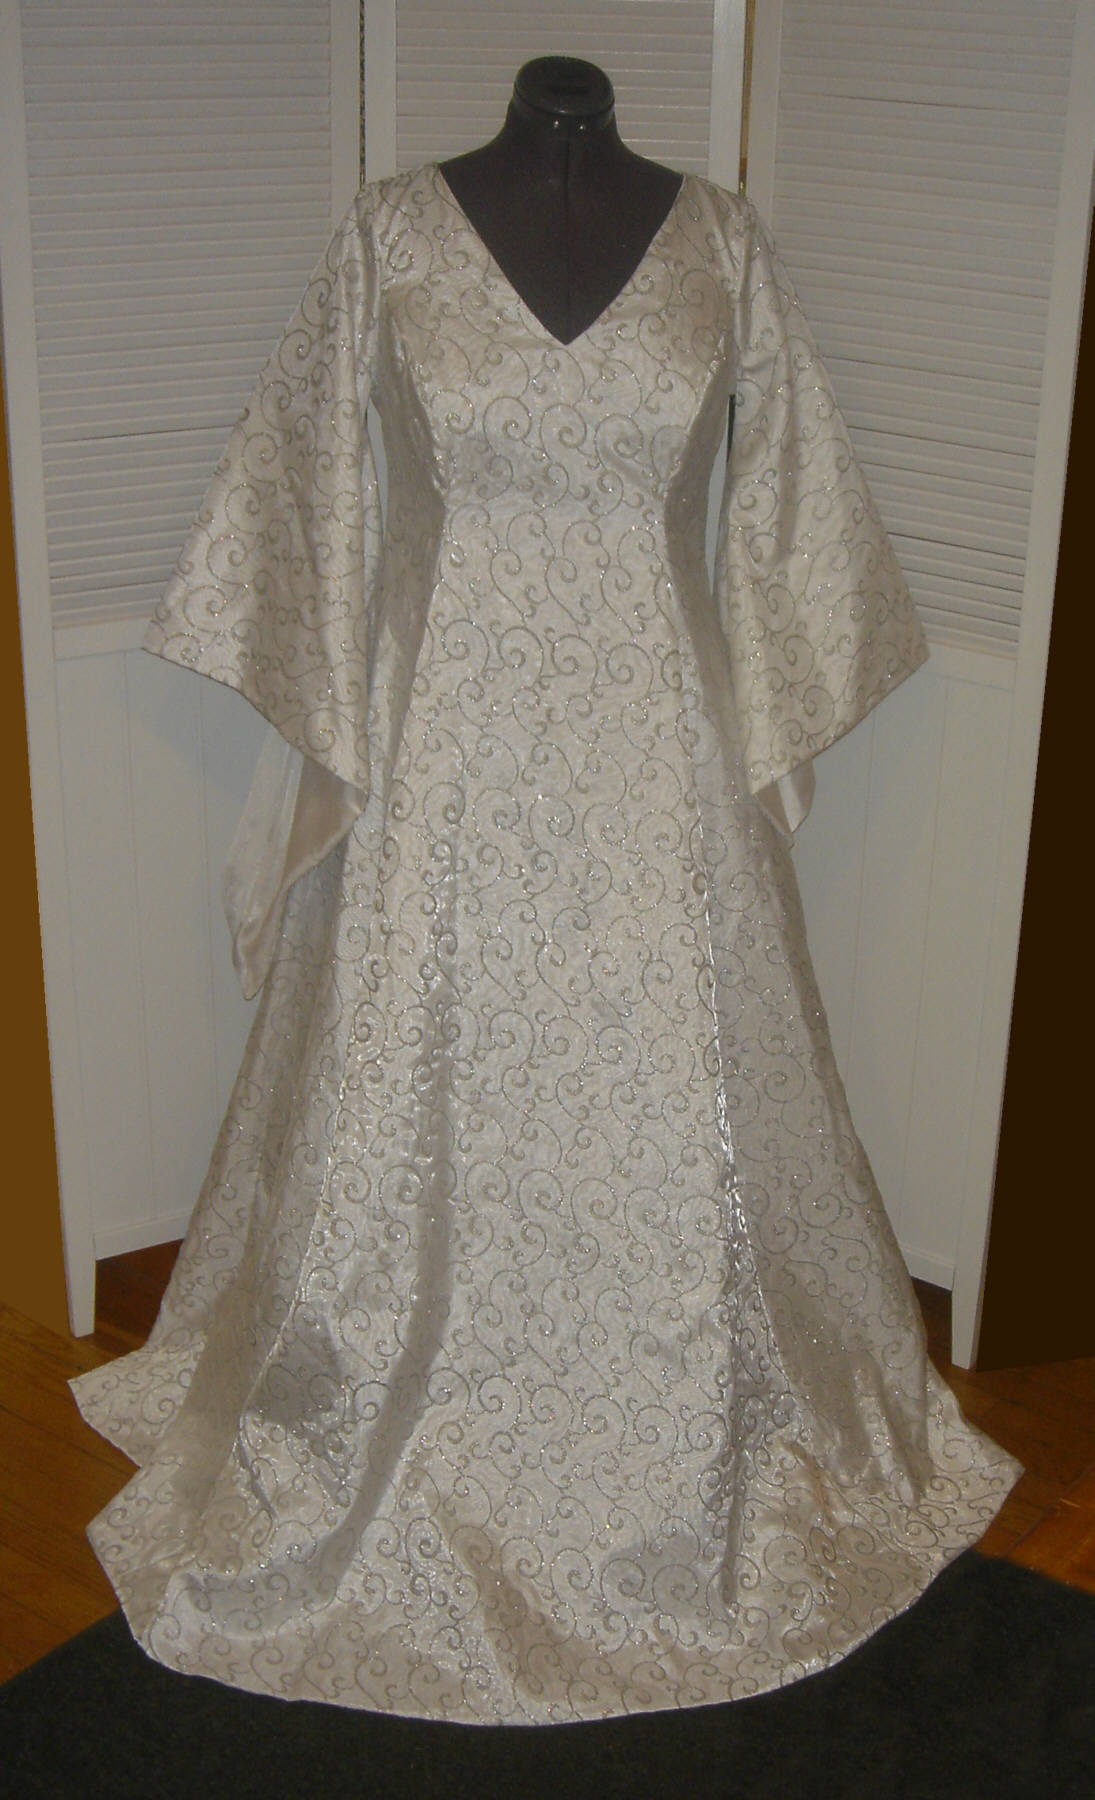 Classic Cotehardie Medieval Renaissance Wedding Gown